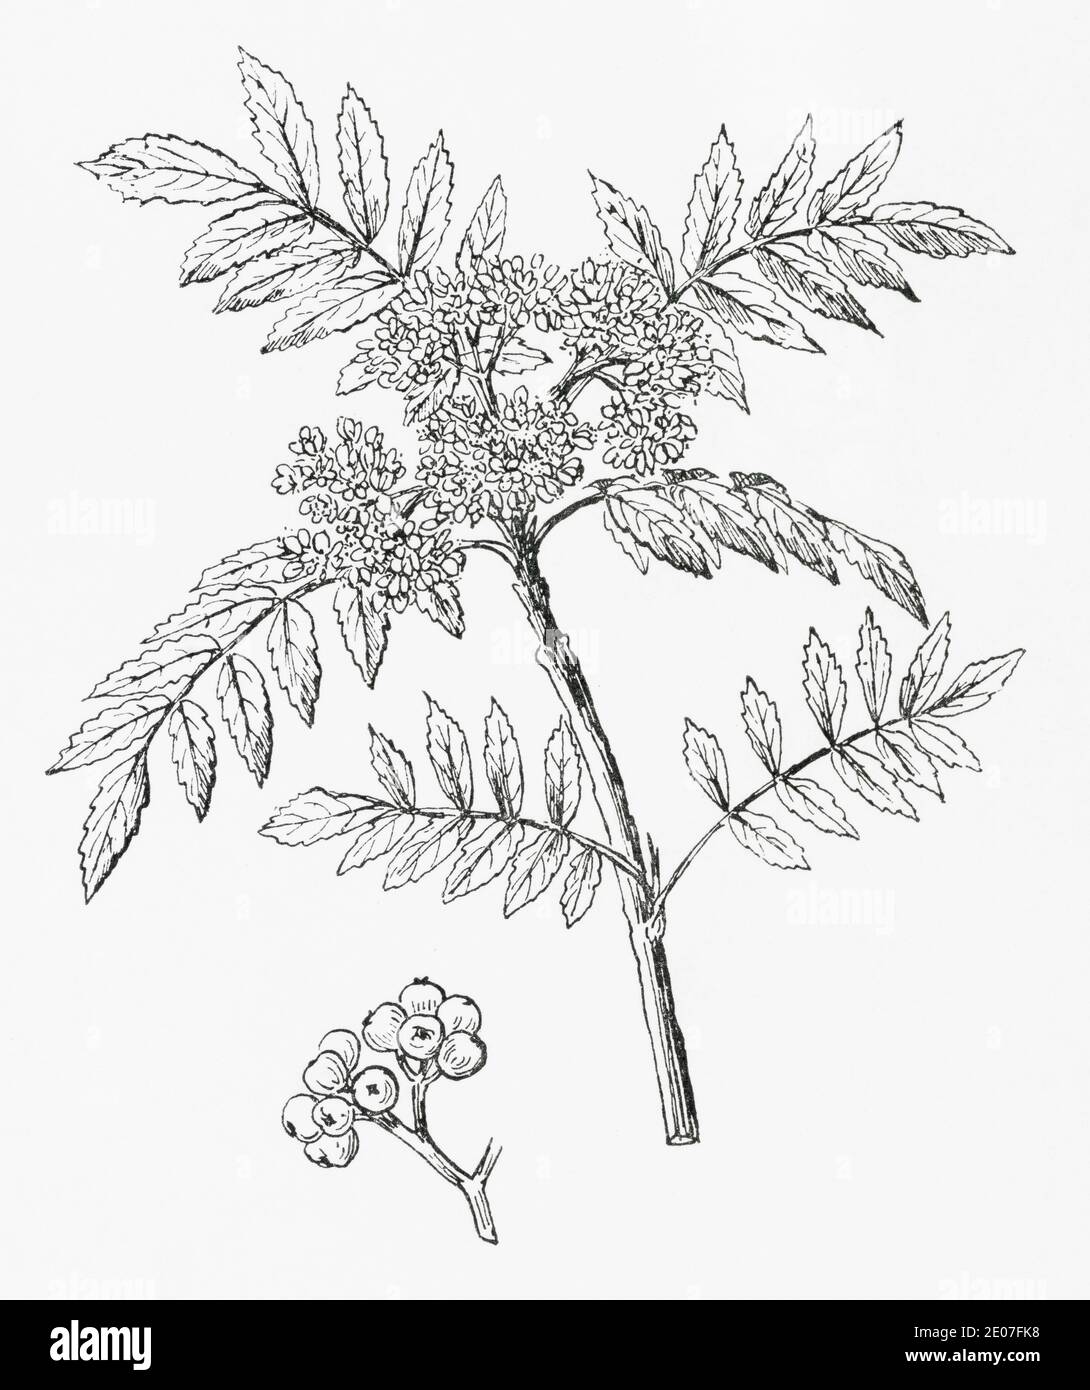 Ancienne gravure d'illustration botanique de la montagne Ash, Rowan / Sorbus aucuparia. Plante médicinale traditionnelle. Voir Remarques Banque D'Images